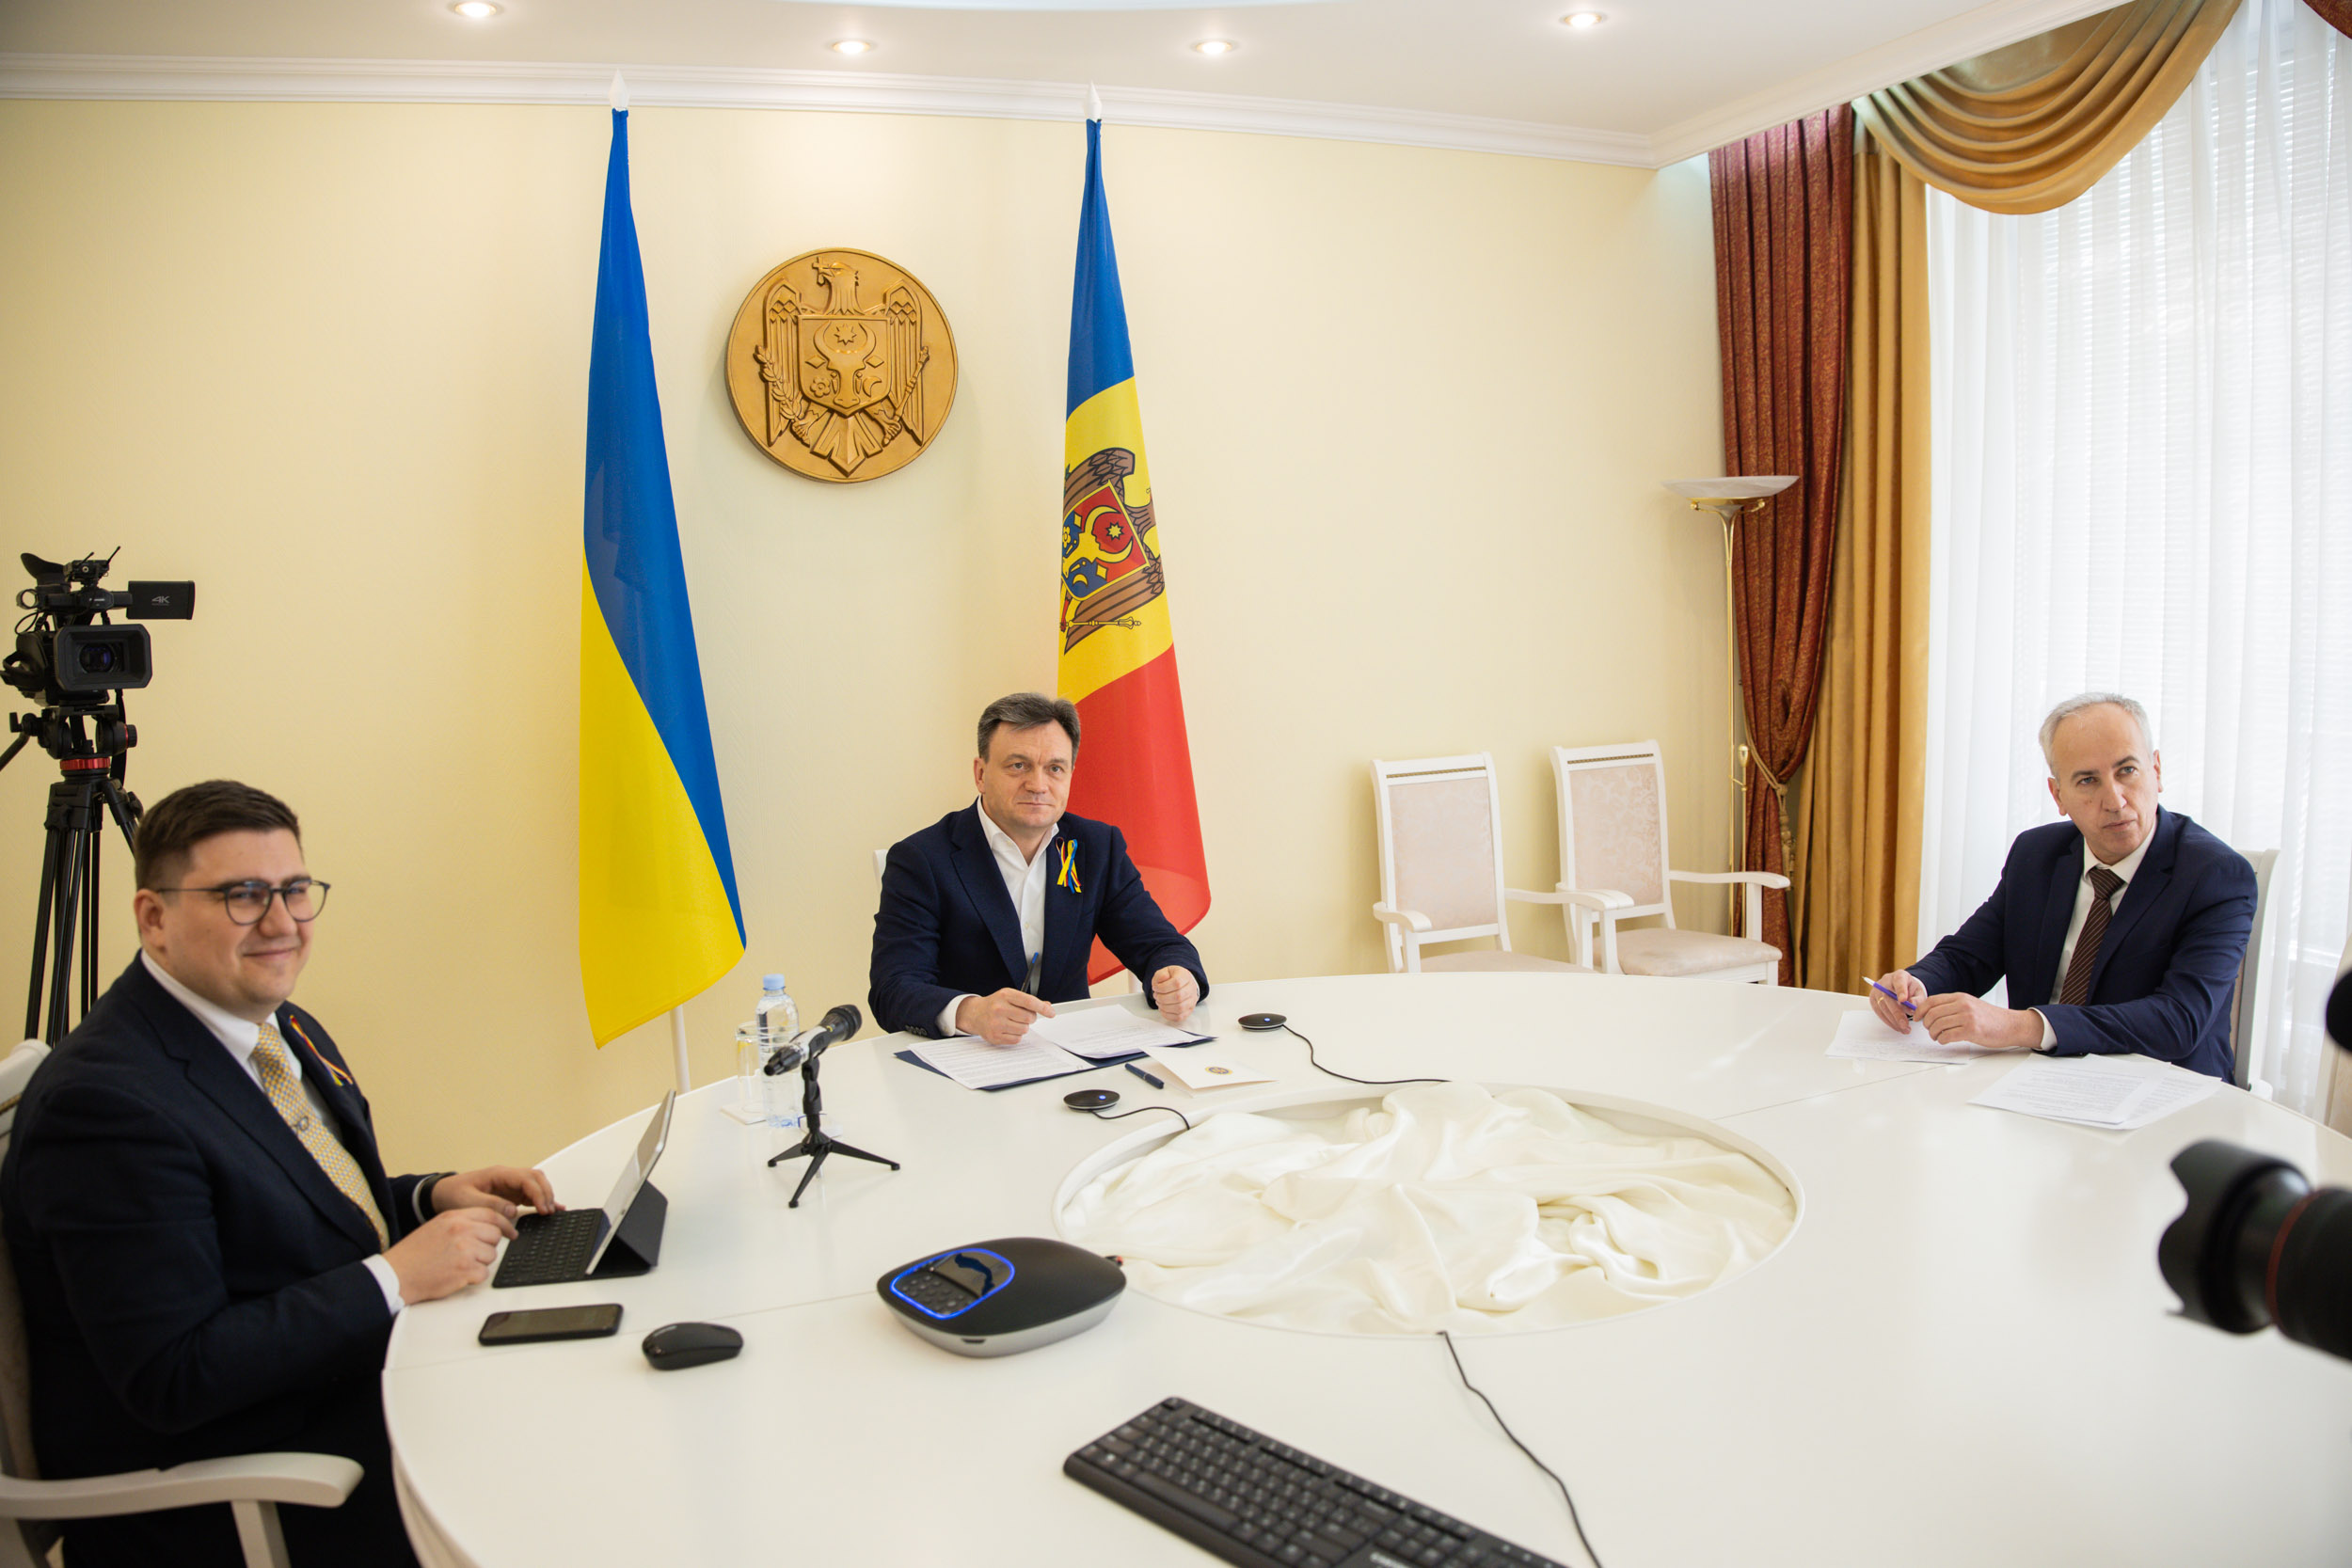 (VIDEO) Dorin Recean, în discuție cu omologul său ucrainean: „Rămânem solidari cu Ucraina și poporul ei”